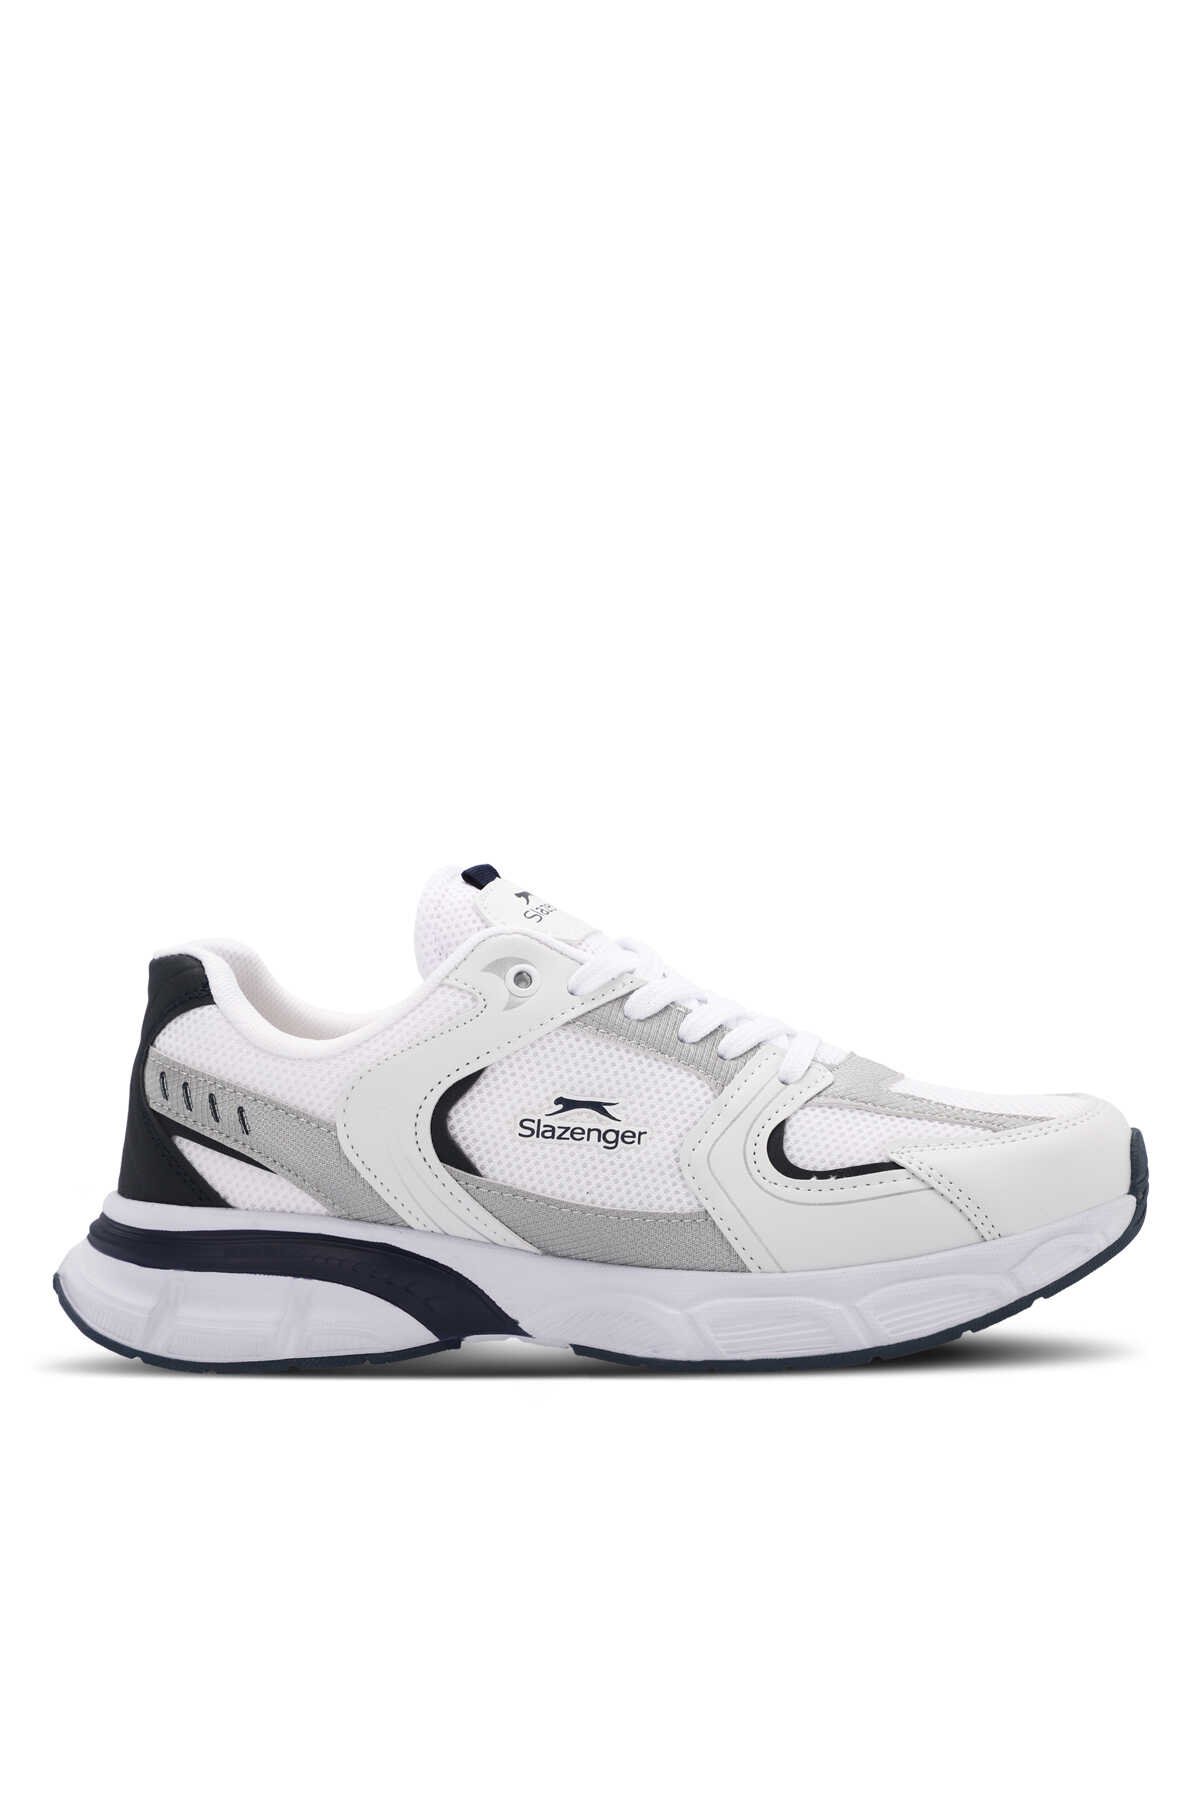 Slazenger - Slazenger ZEX Erkek Sneaker Ayakkabı Beyaz / Lacivert